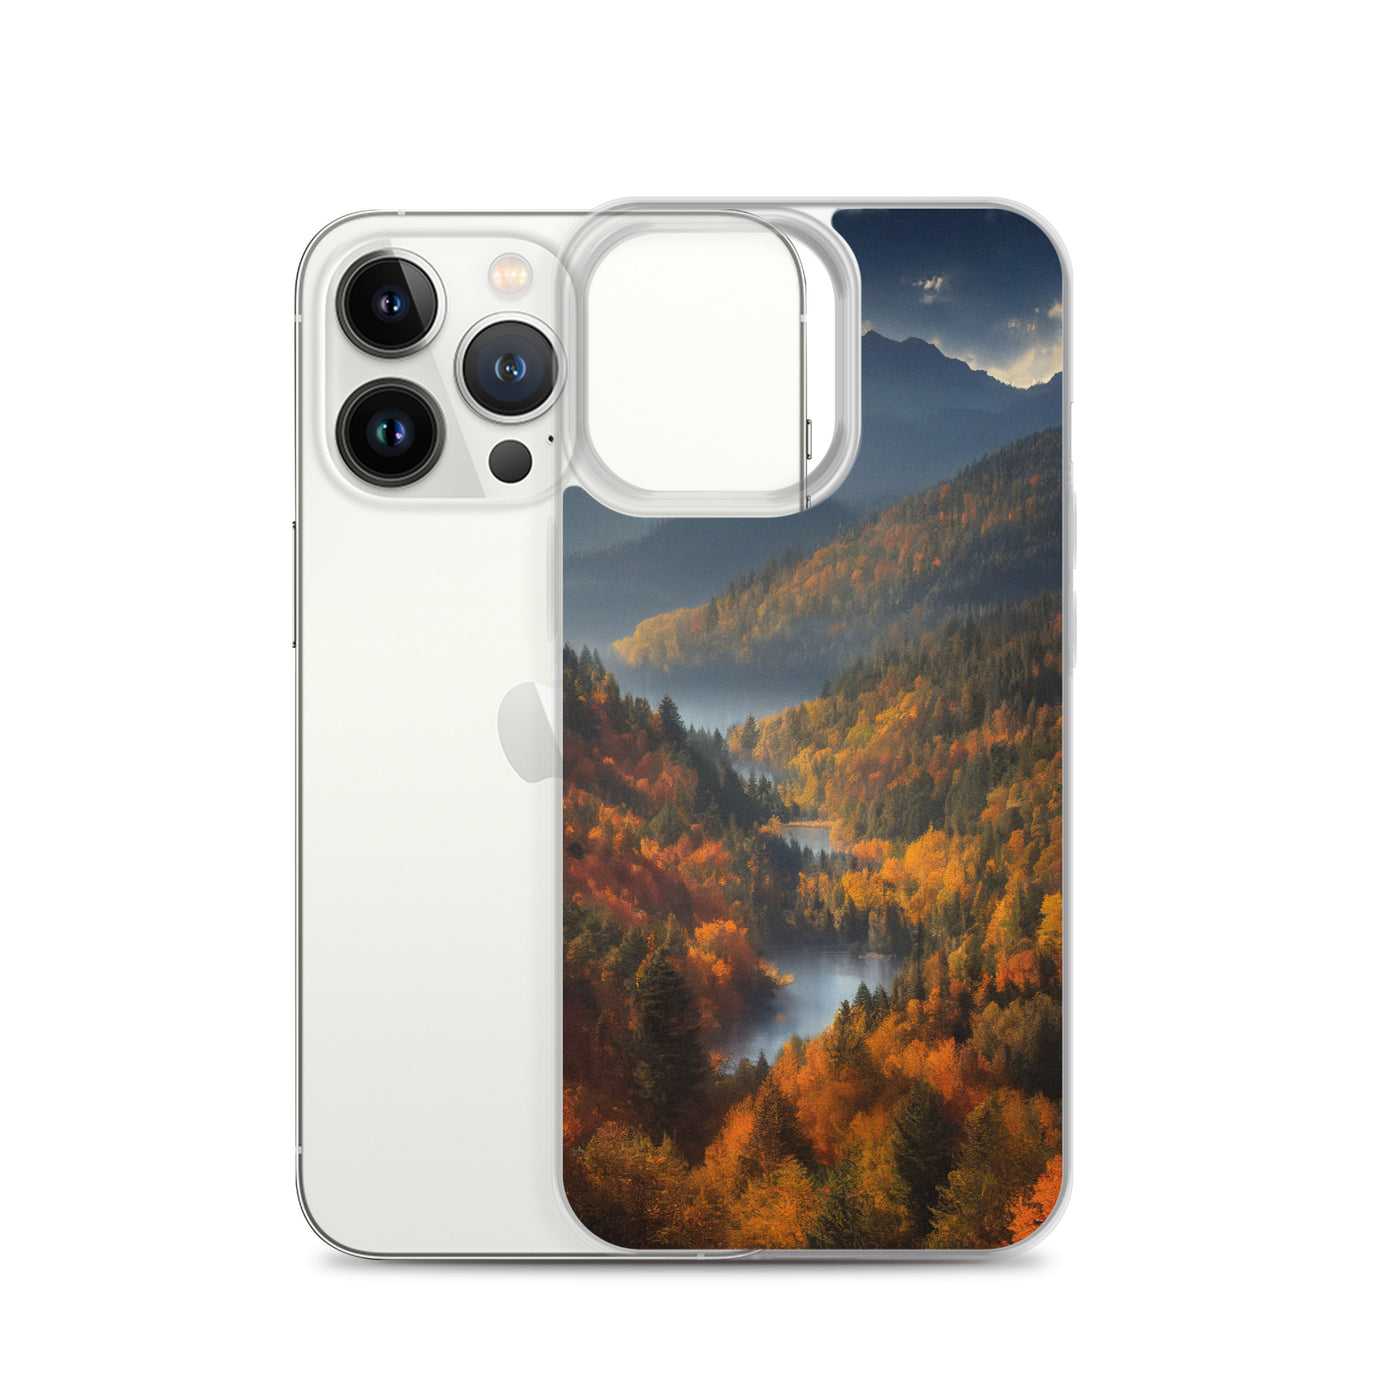 Berge, Wald und Nebel - Malerei - iPhone Schutzhülle (durchsichtig) berge xxx